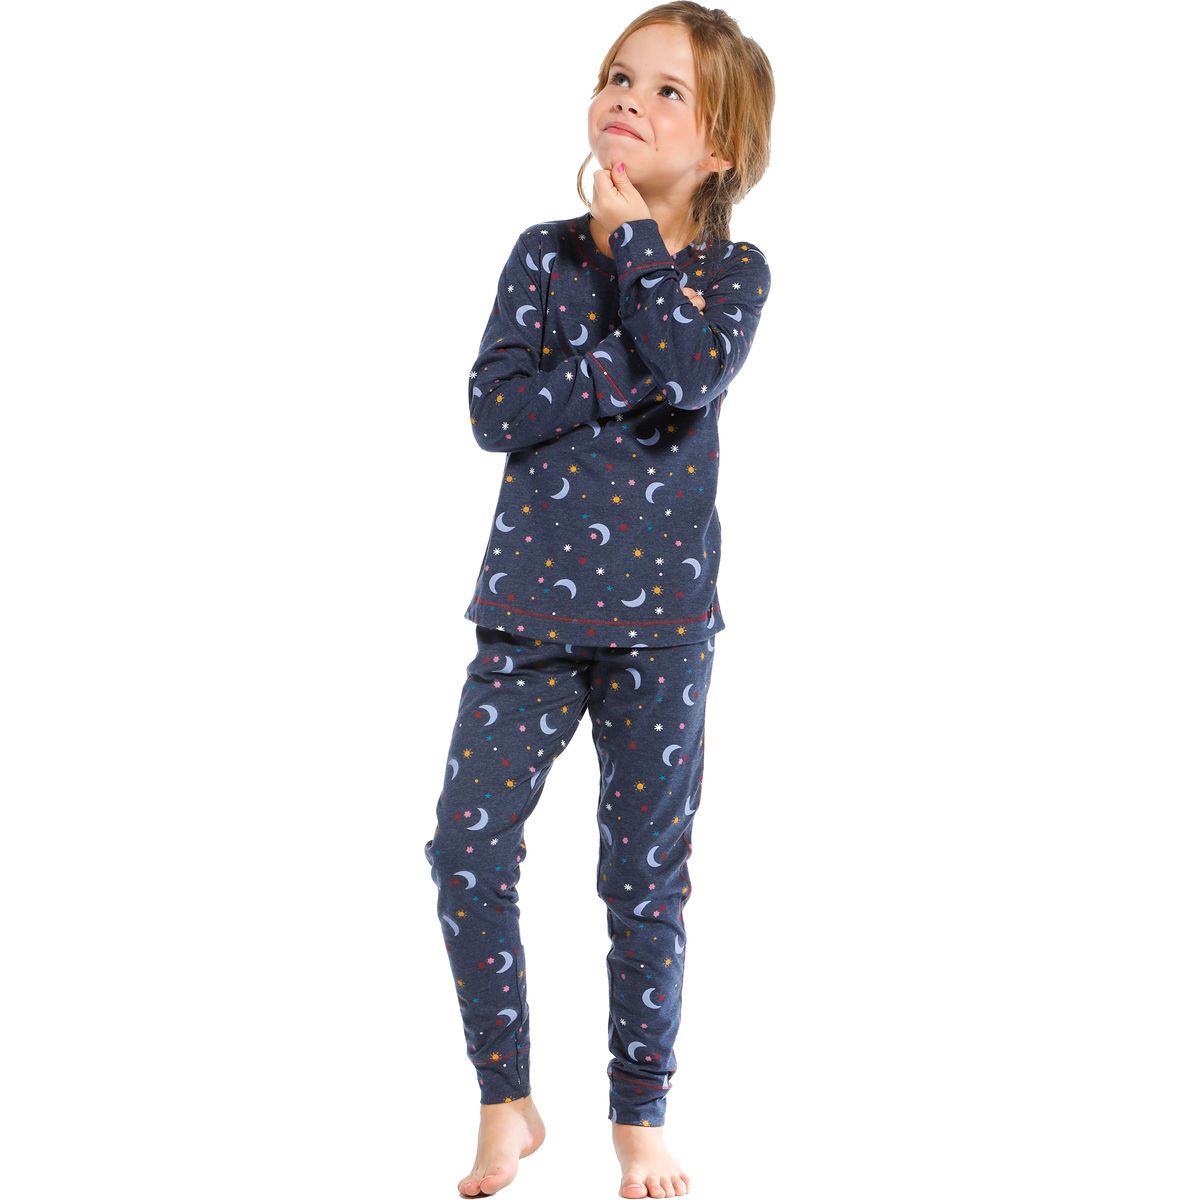 Materialisme lof Pluche pop Meisjes pyjama moon en stars | Gratis verzending en retour | Online de  mooiste pyjama's, nachthemden, ondermode en meer